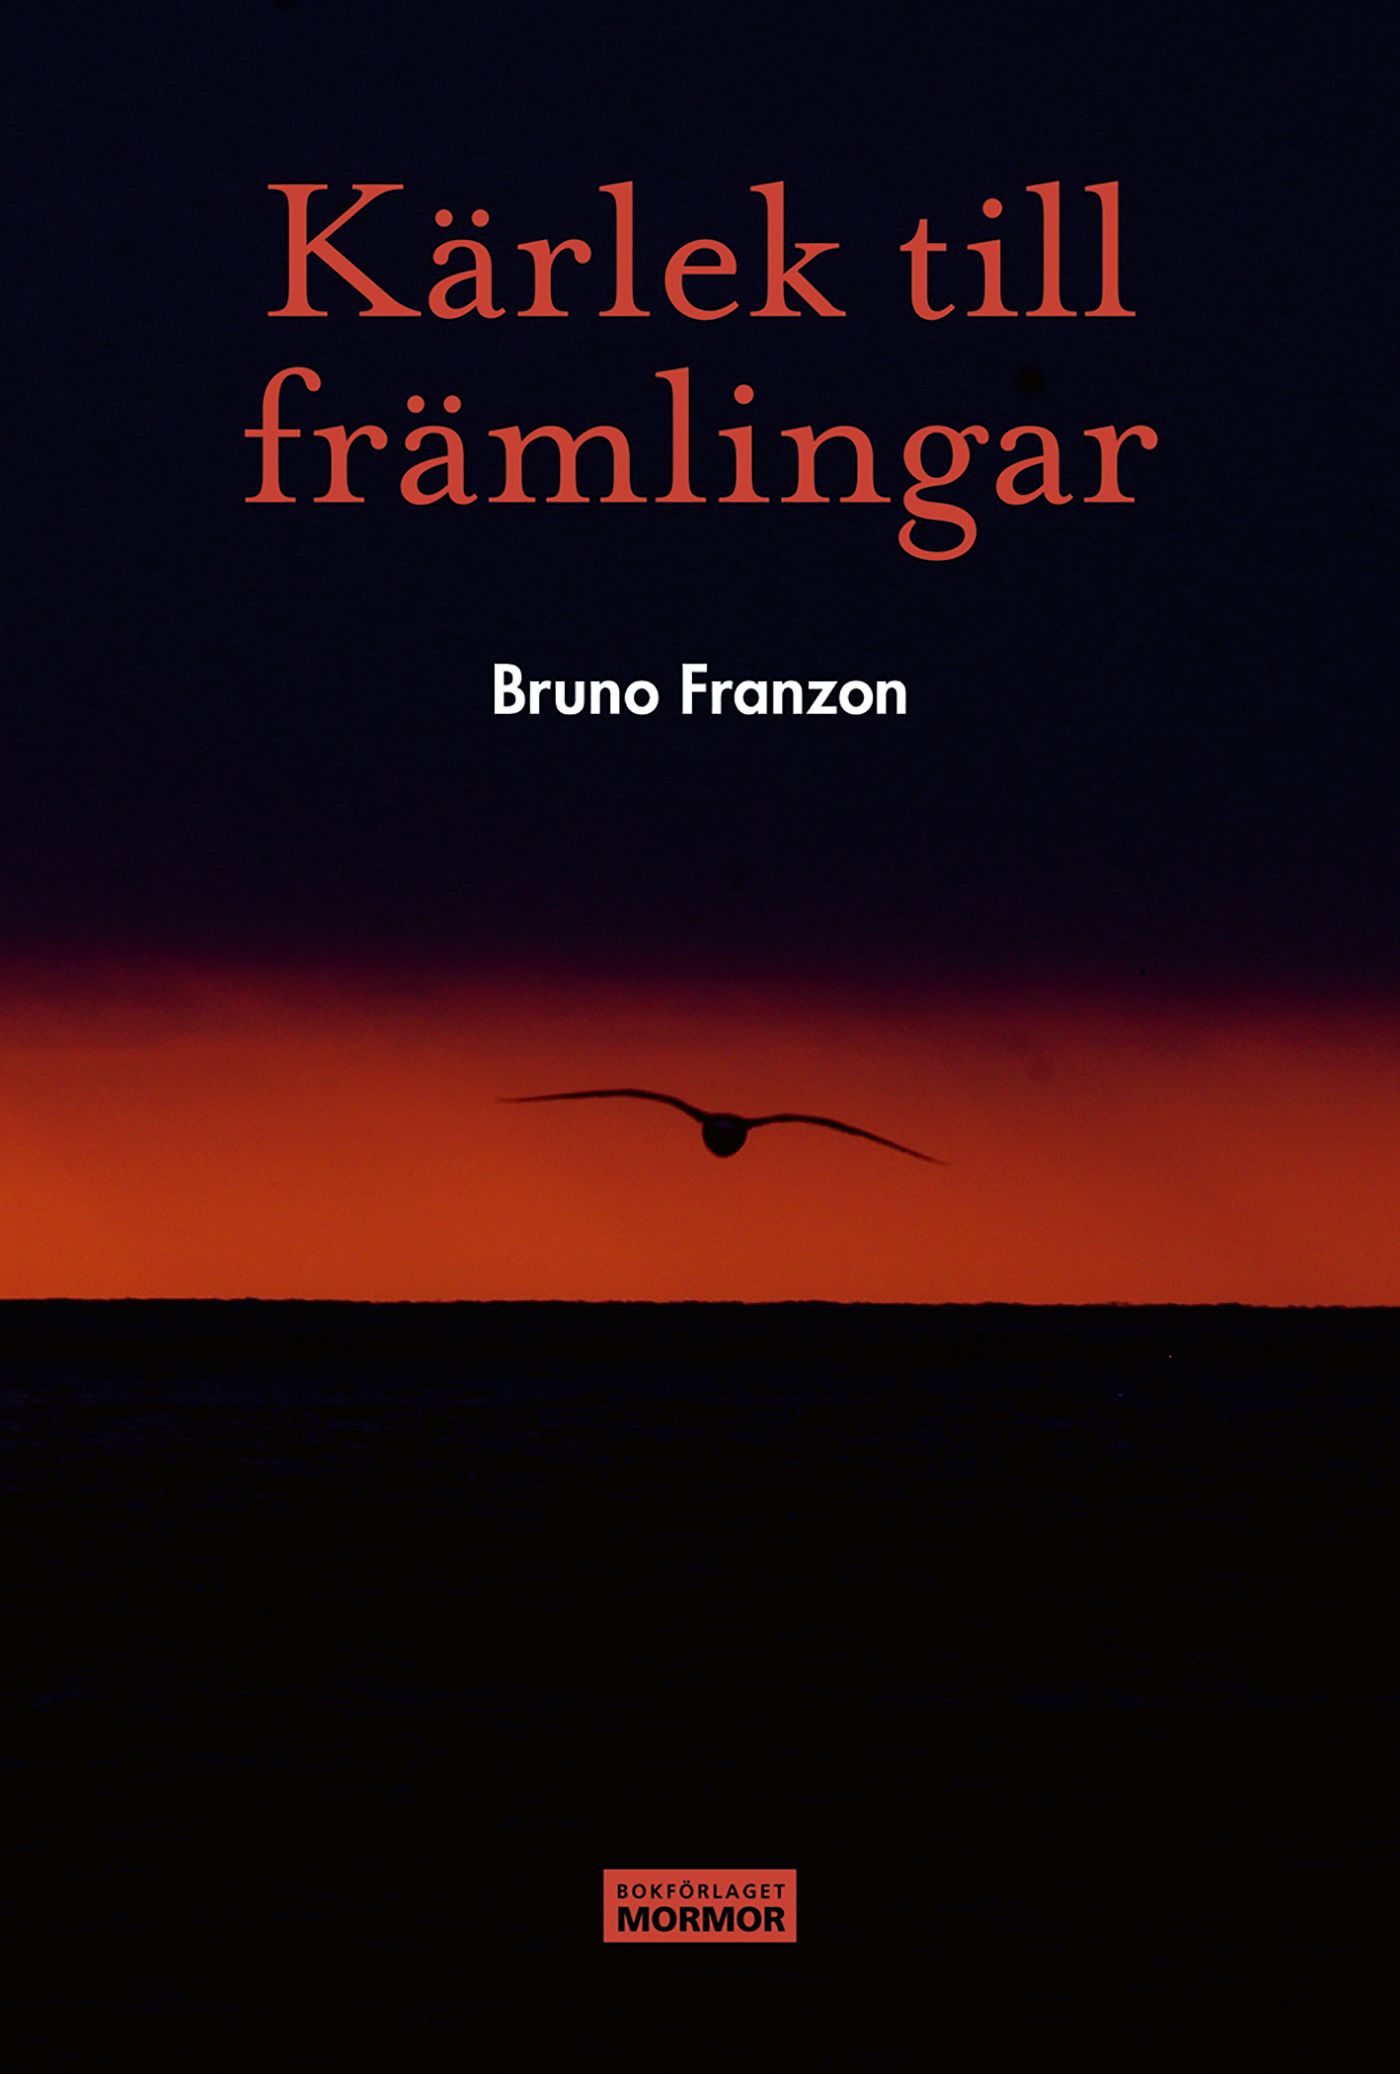 Kärlek till främlingar, eBook by Bruno Franzon